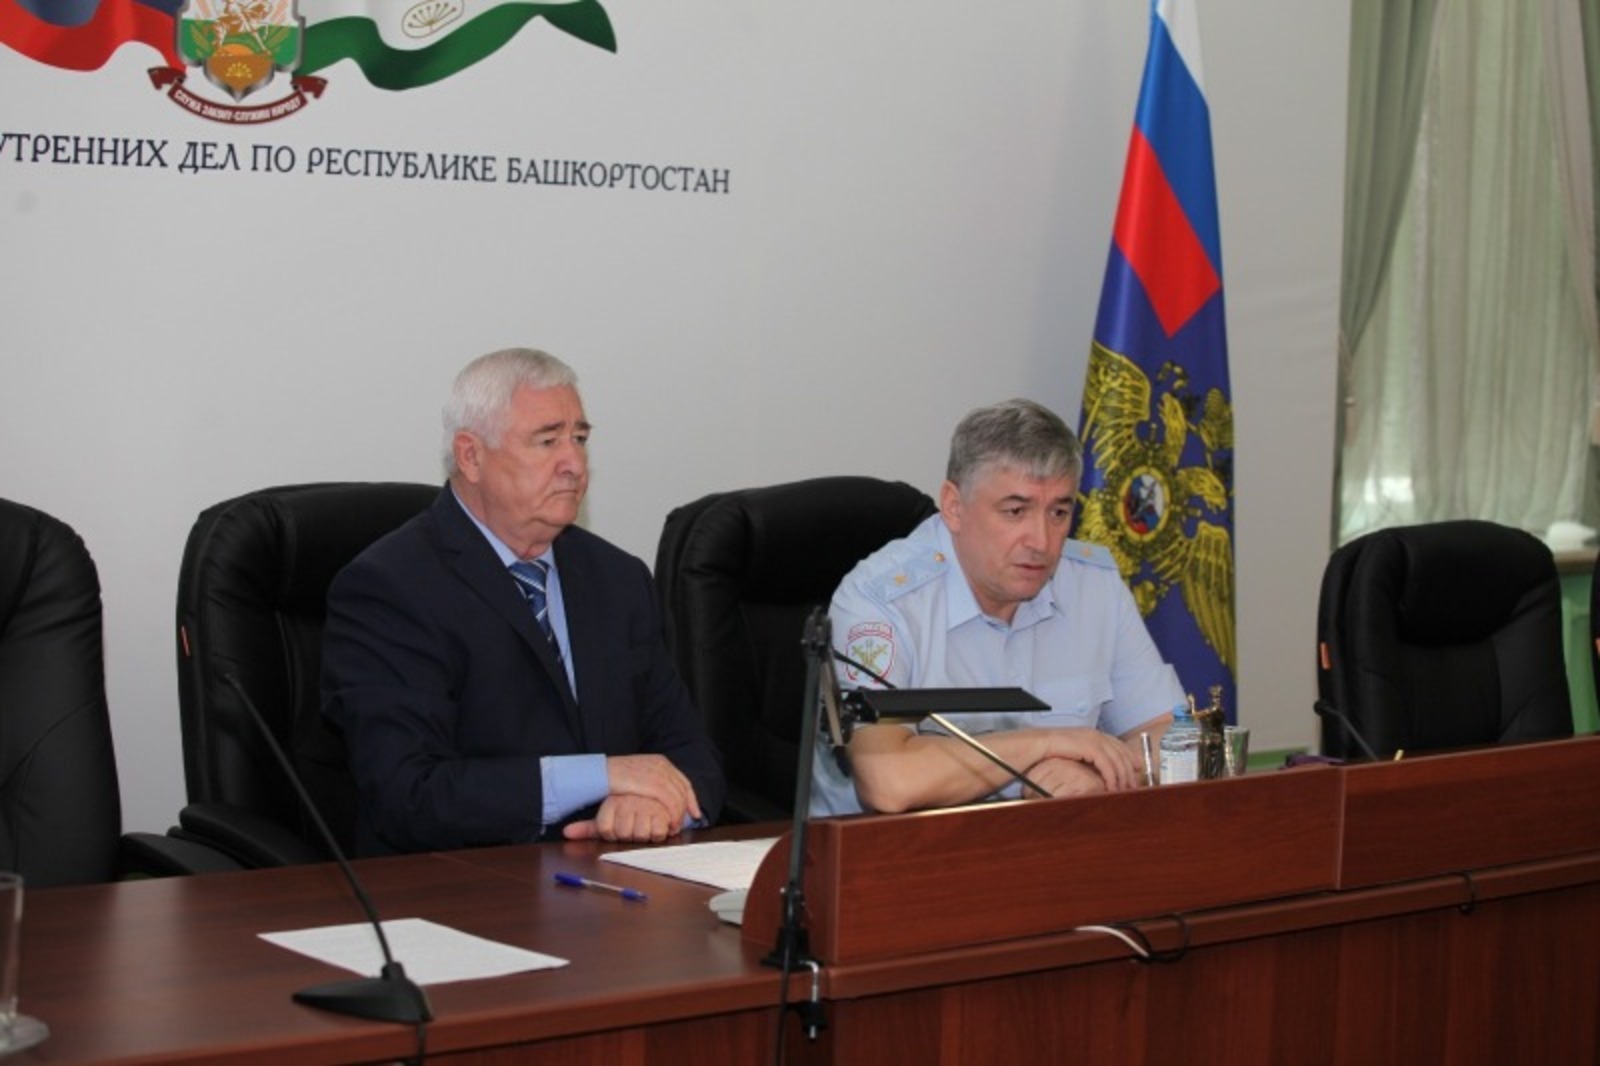 «Просто положите трубку» - глава МВД Башкирии рассказал о защите от телефонных мошенников